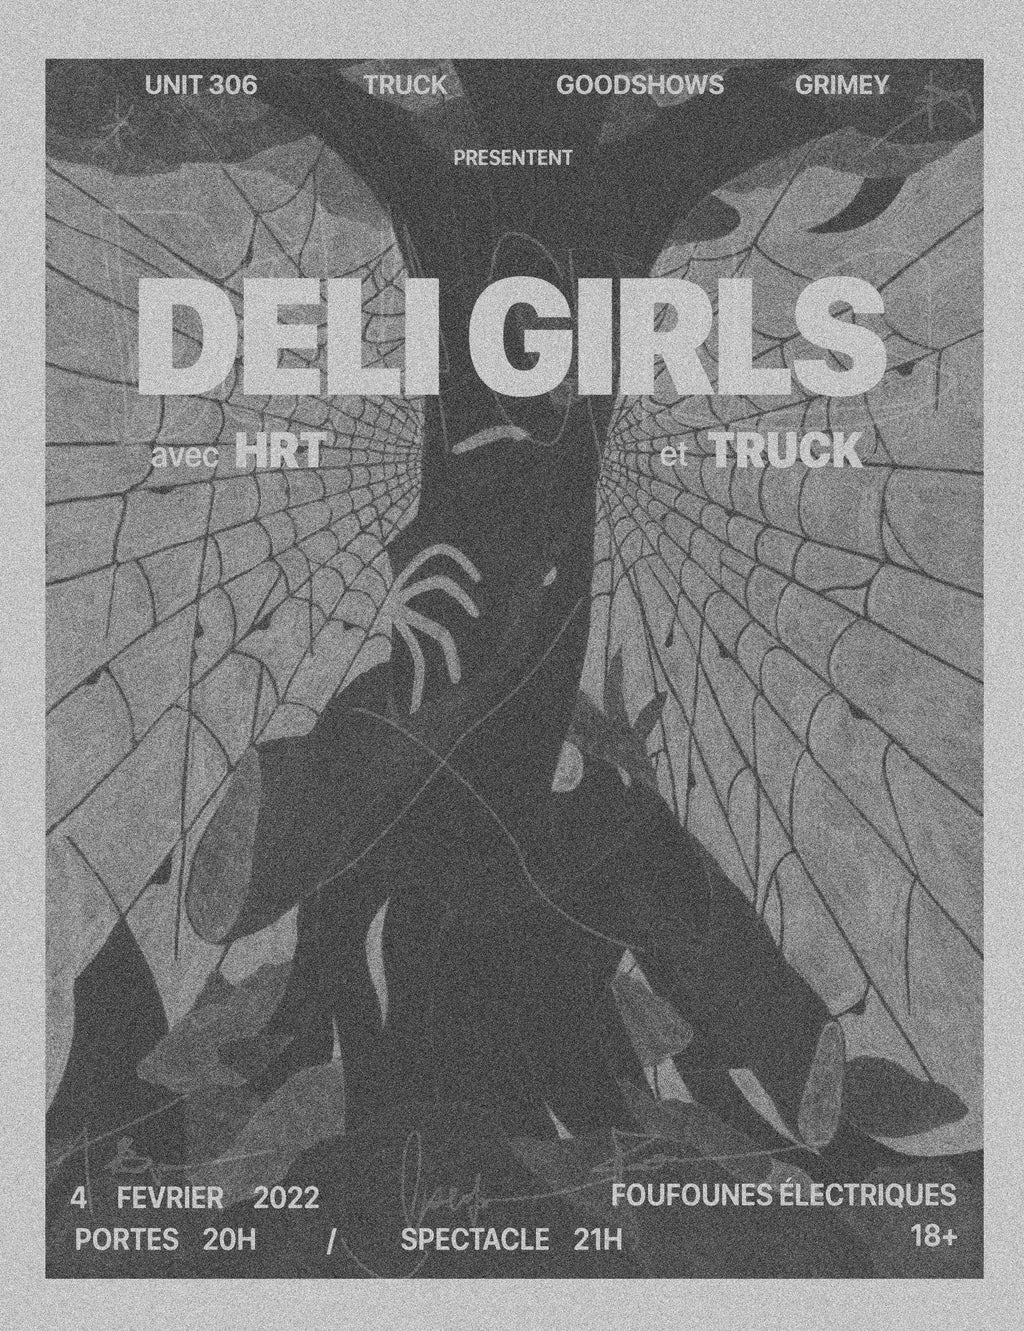 Deli Girls - HRT - Truck